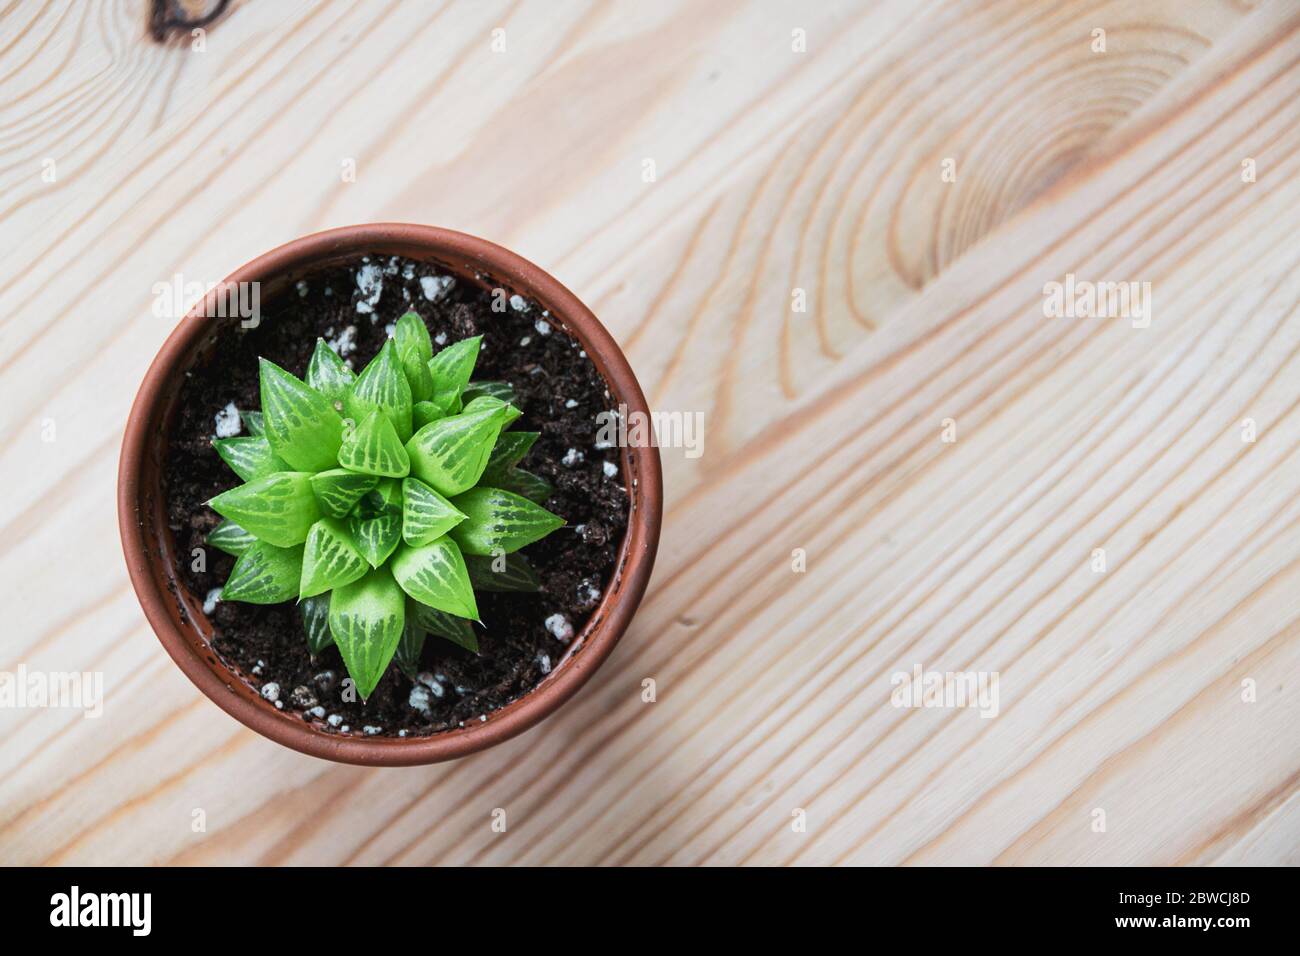 Vista dall'alto di una piccola turgida haworthia succulente pianta in terracotta su un tavolo di legno chiaro. Pianta piccola attraente modellata. Foto Stock